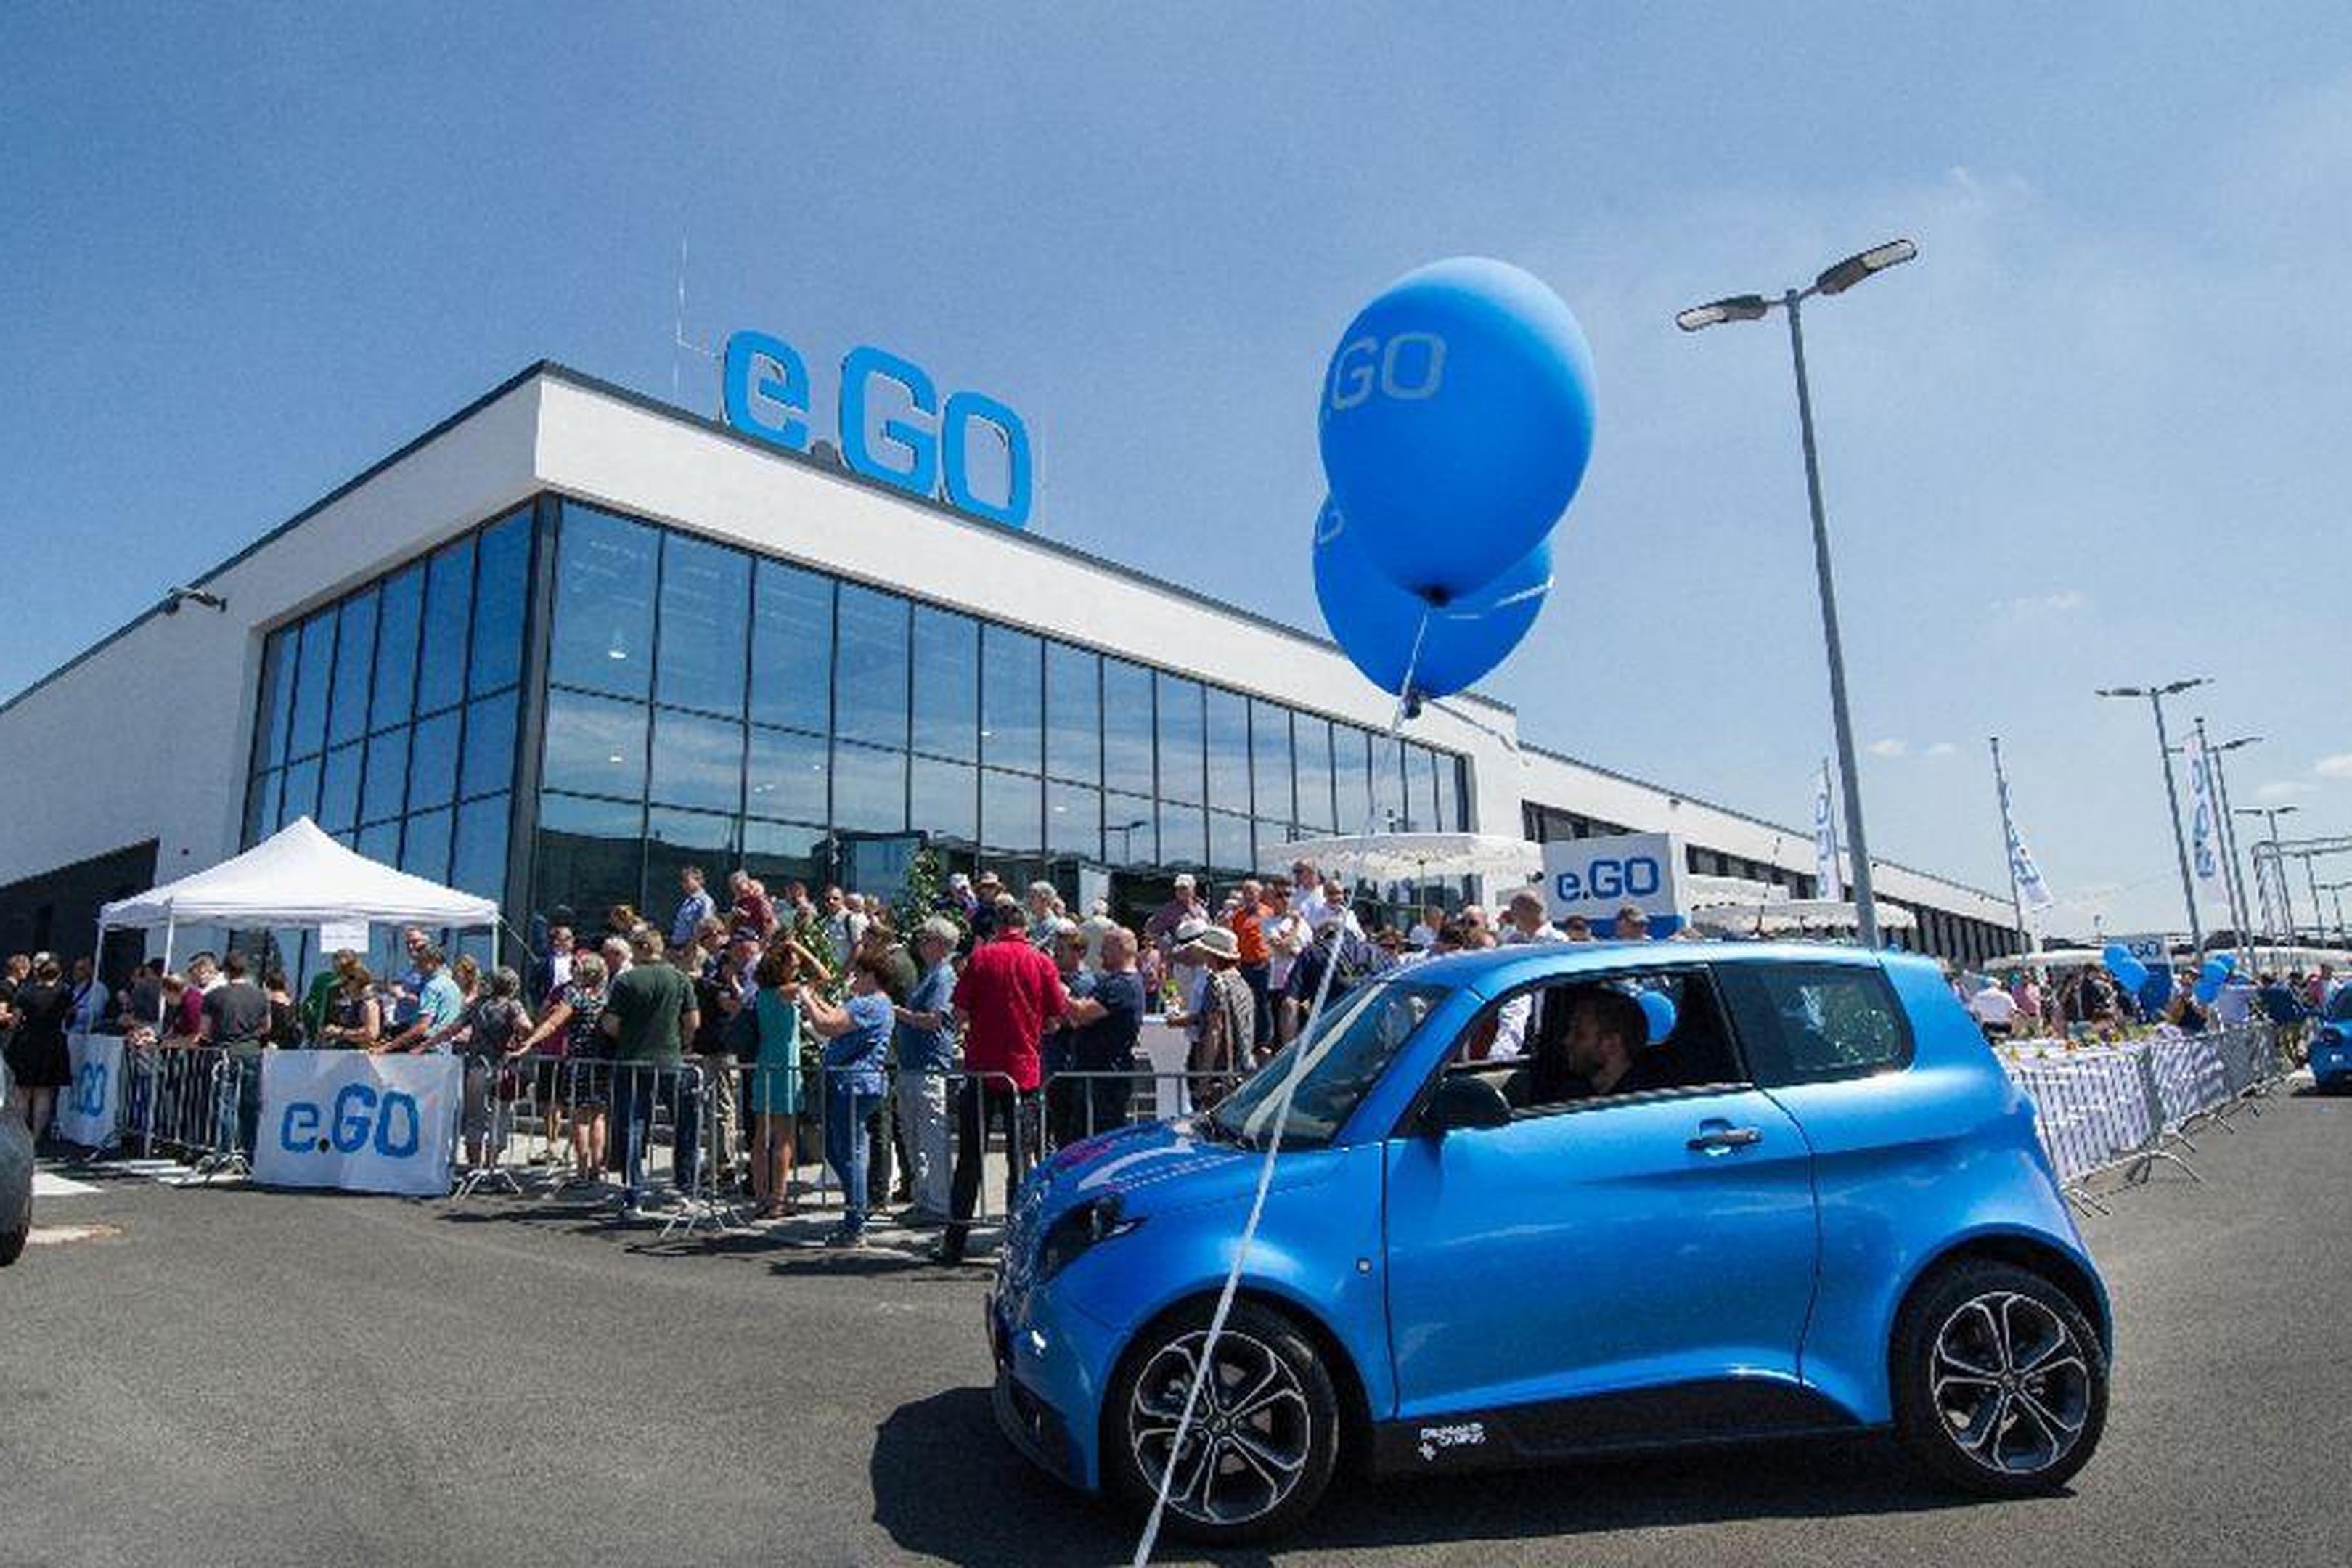 Ausgejubelt: Der Aachener Autobauer e.Go hört auf zu existieren. In der jüngsten Pleite hat sich kein Investore mehr gefunden, der noch Geld in die E-Mobile made in Aachen stecken will.